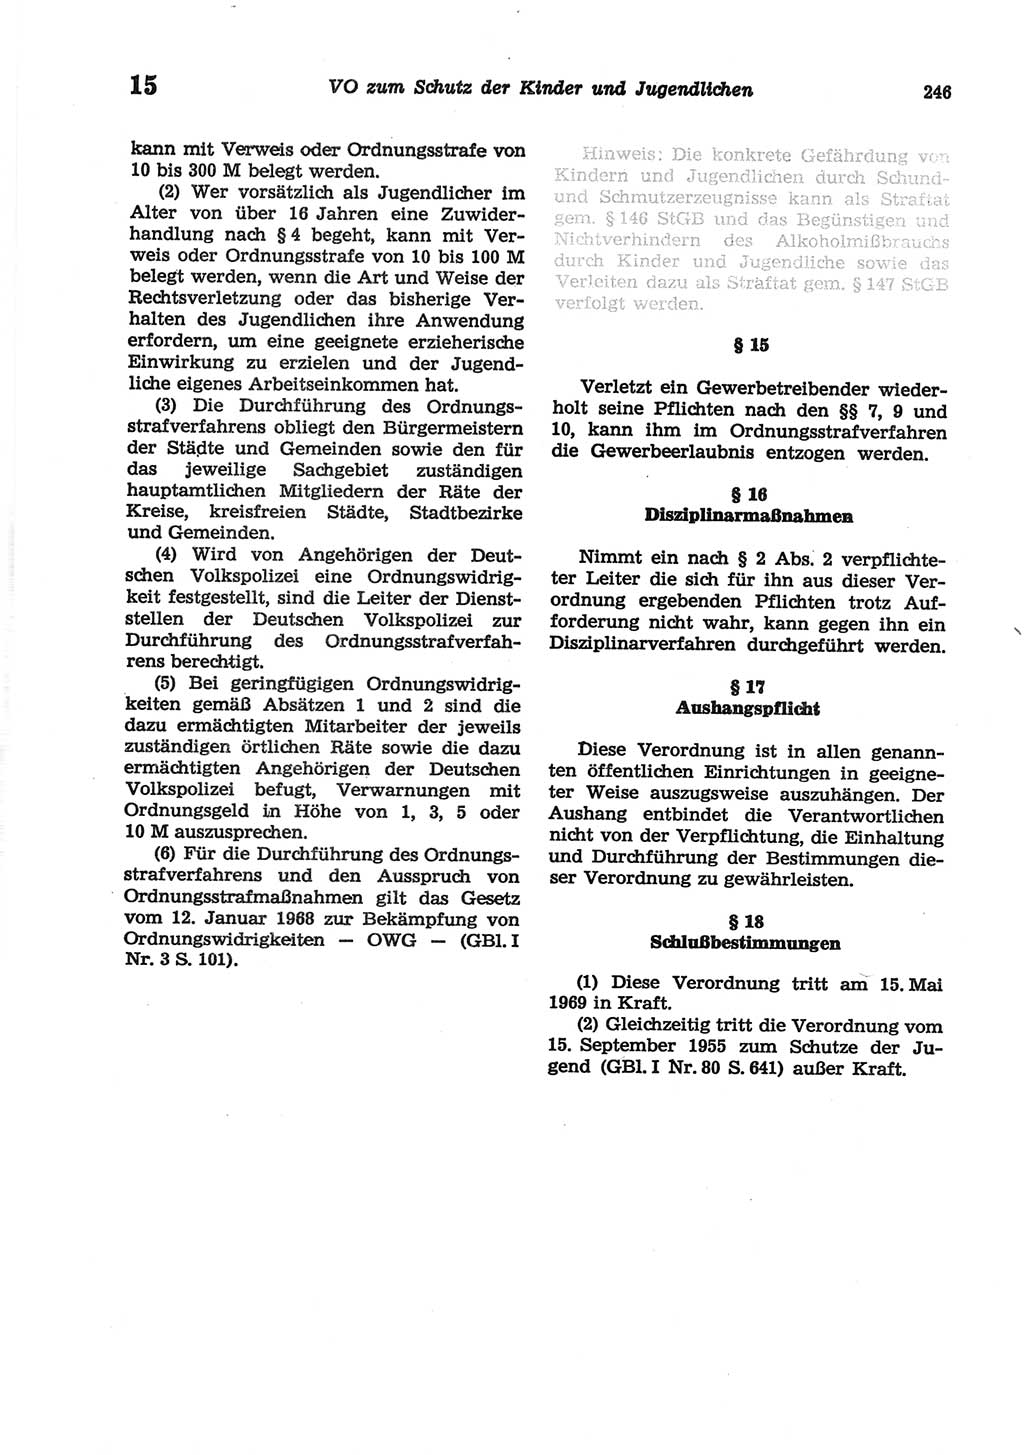 Strafgesetzbuch (StGB) der Deutschen Demokratischen Republik (DDR) und angrenzende Gesetze und Bestimmungen 1977, Seite 246 (StGB DDR Ges. Best. 1977, S. 246)